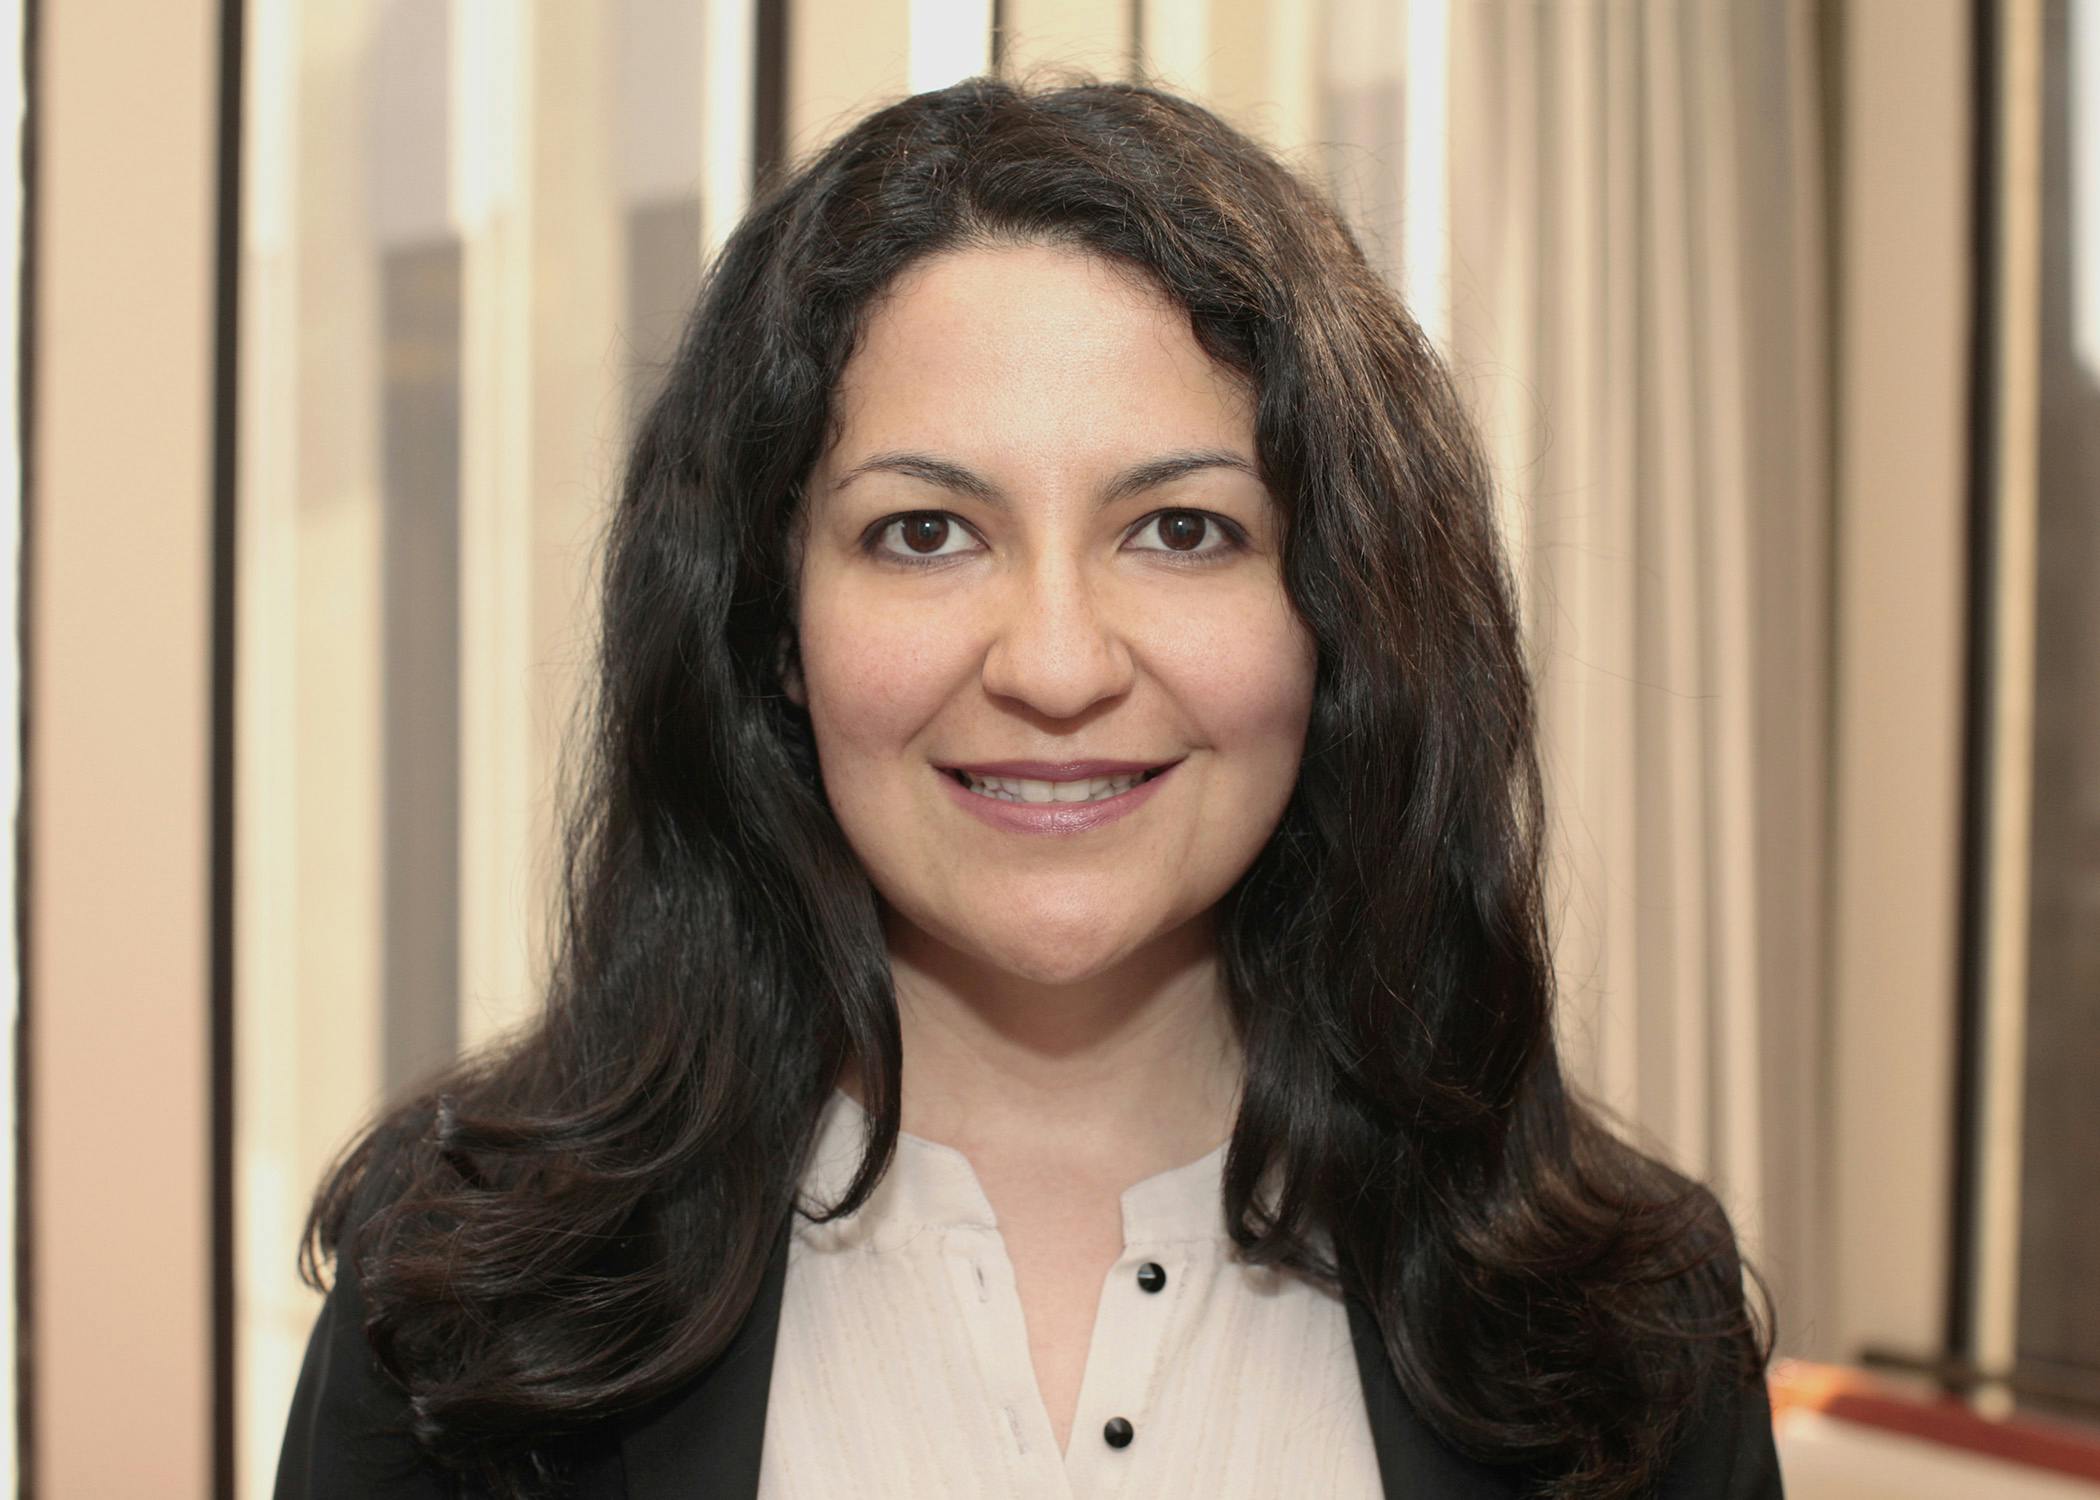 Gabrielle B. Goldstein, PhD